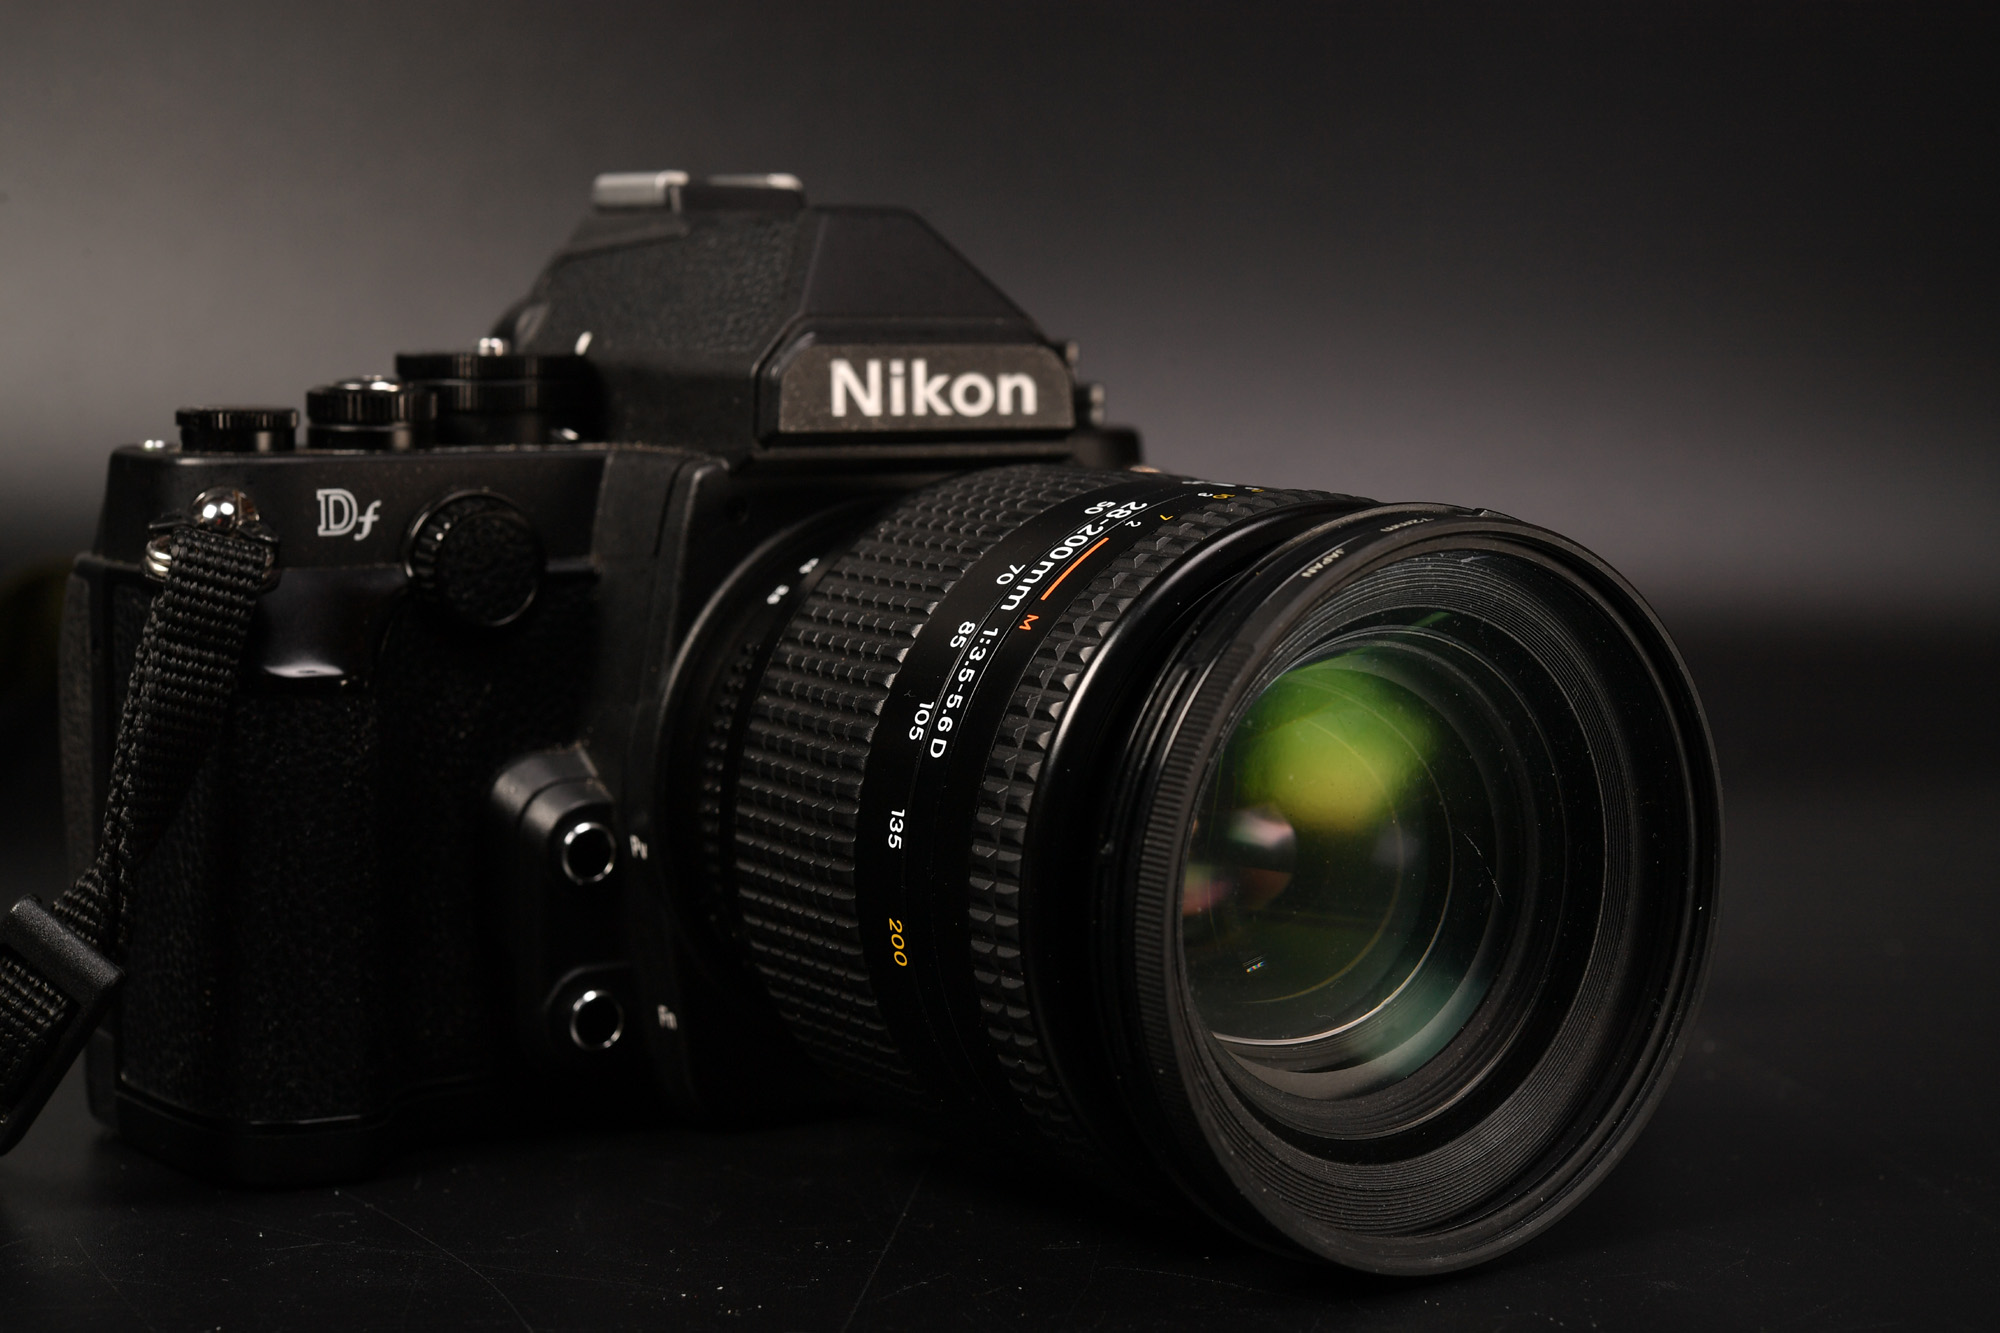 AF NIKKOR 28-200mm F3.5-5.6D 安かったのでDレンズ購入！ FDで夜桜試し撮り。